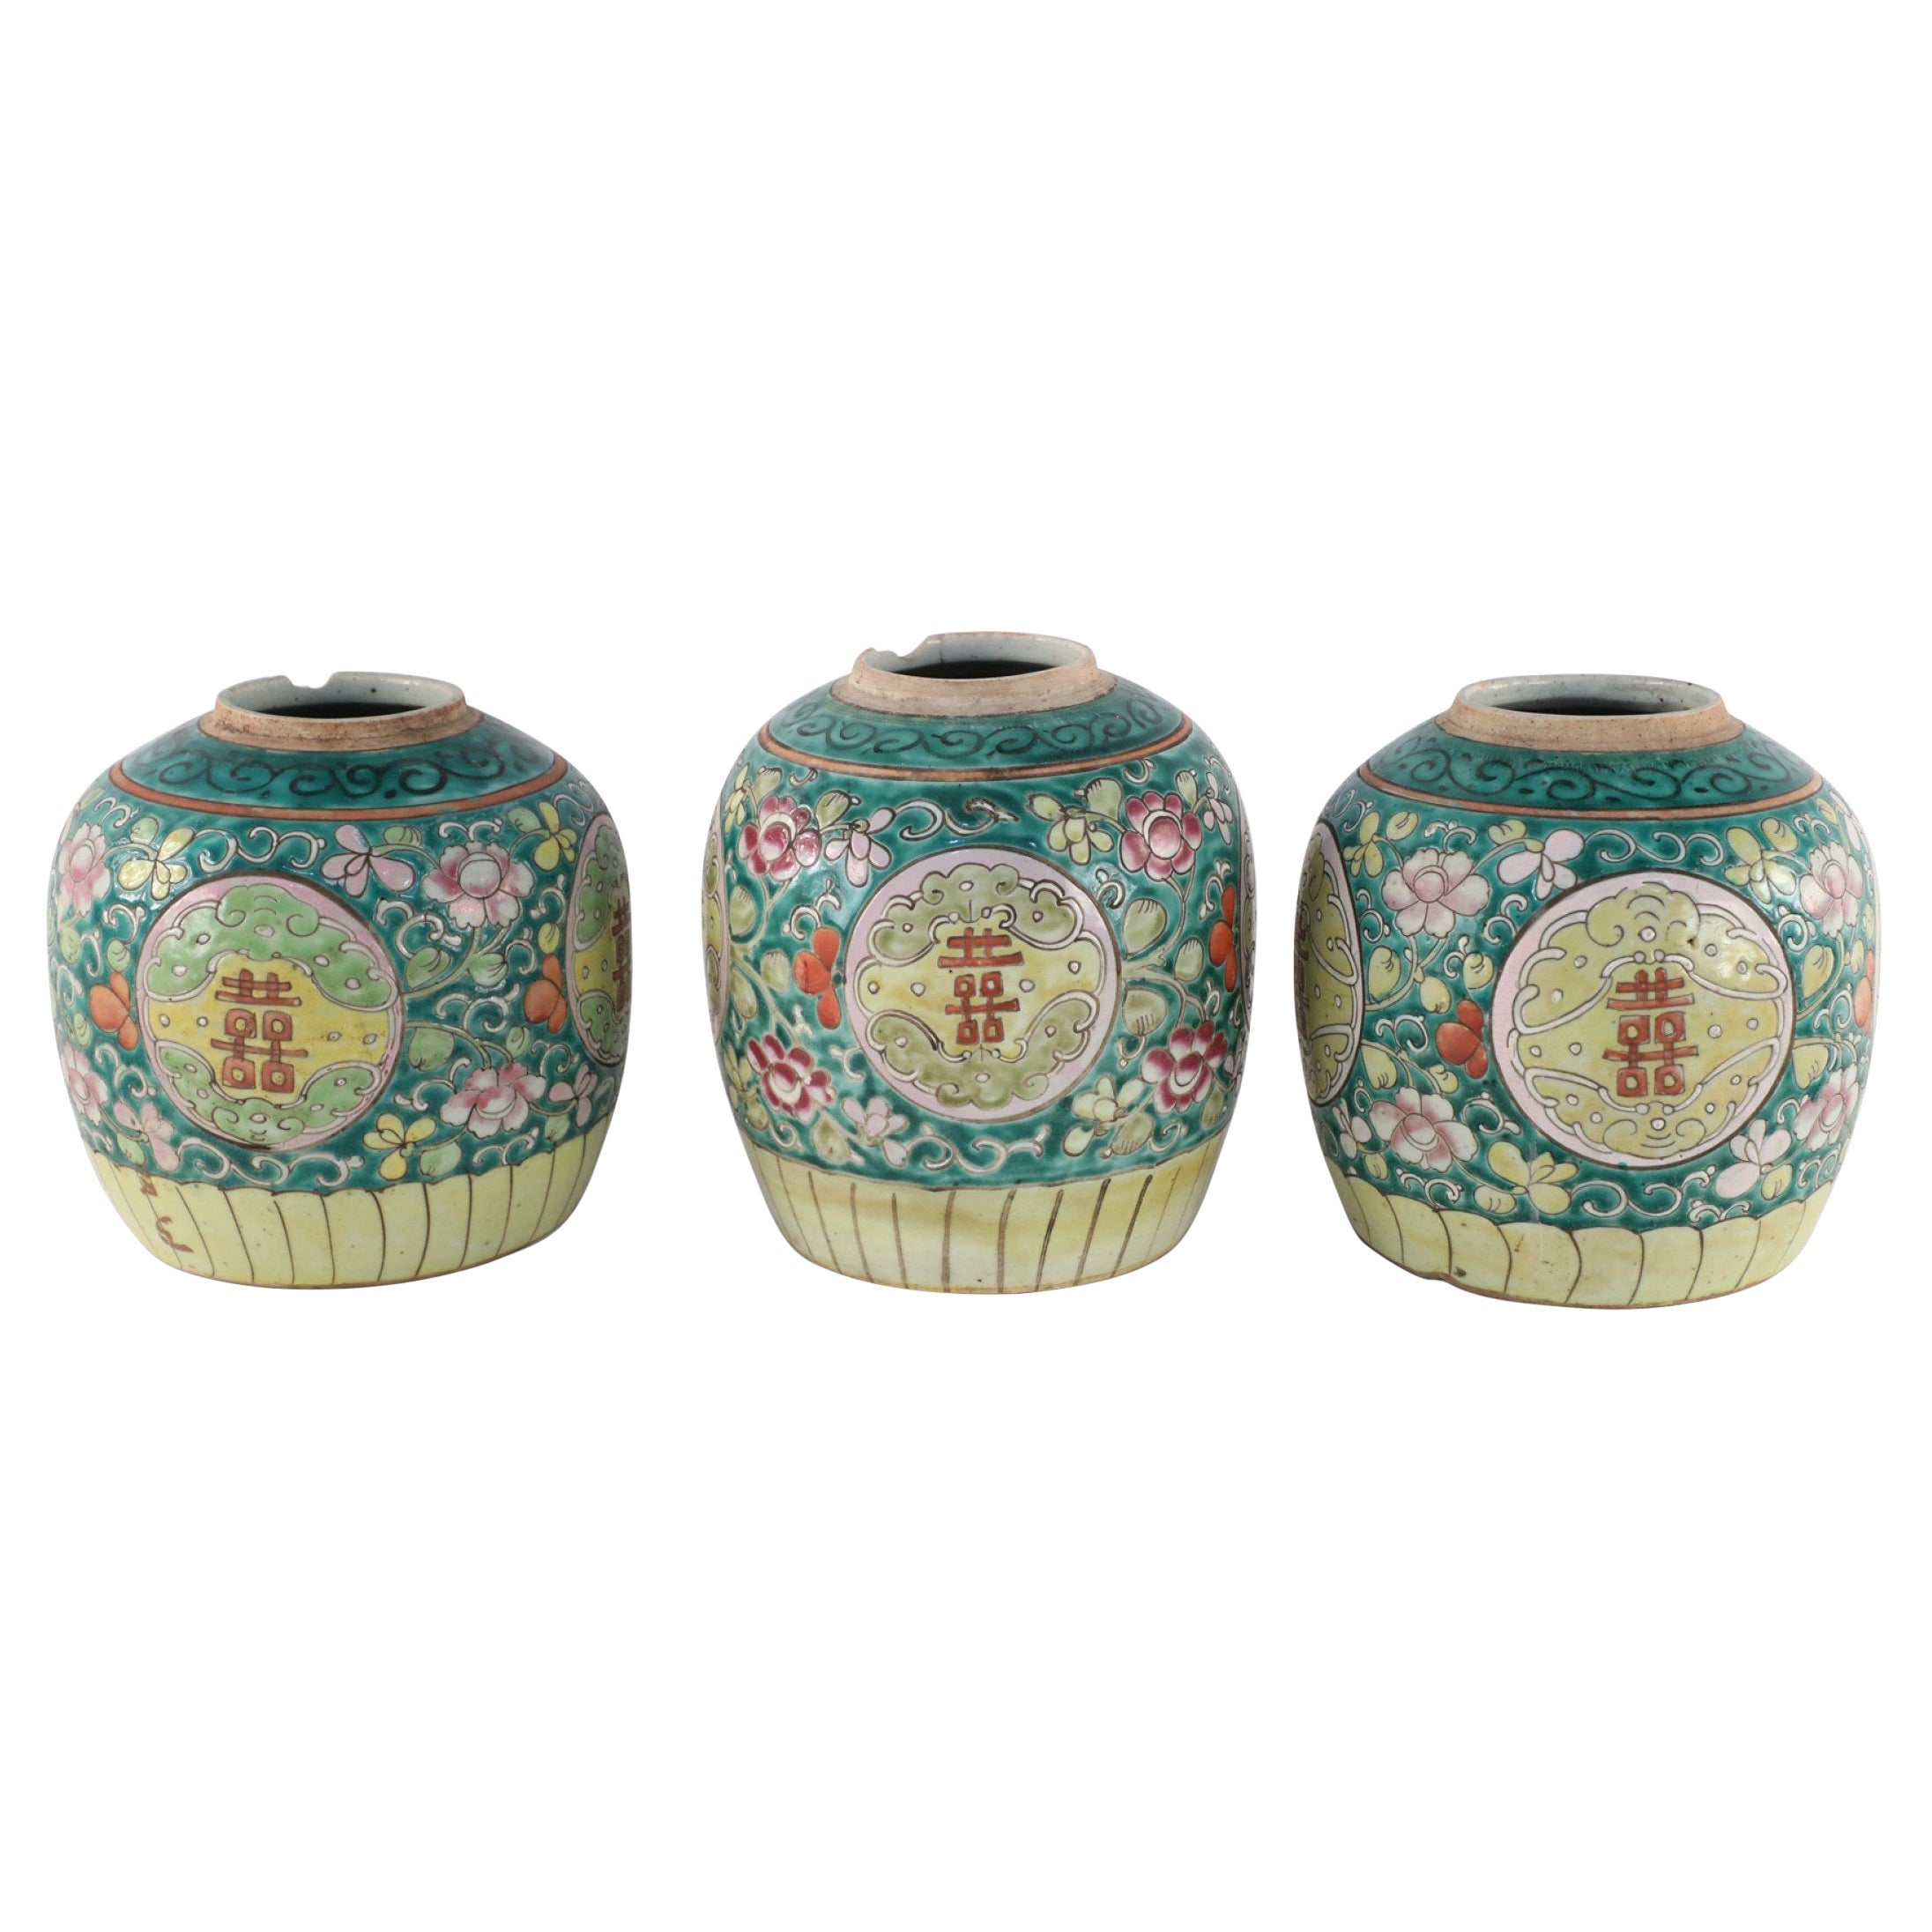 Chinese Green Floral Scrolling Design Ginger Jar Vases